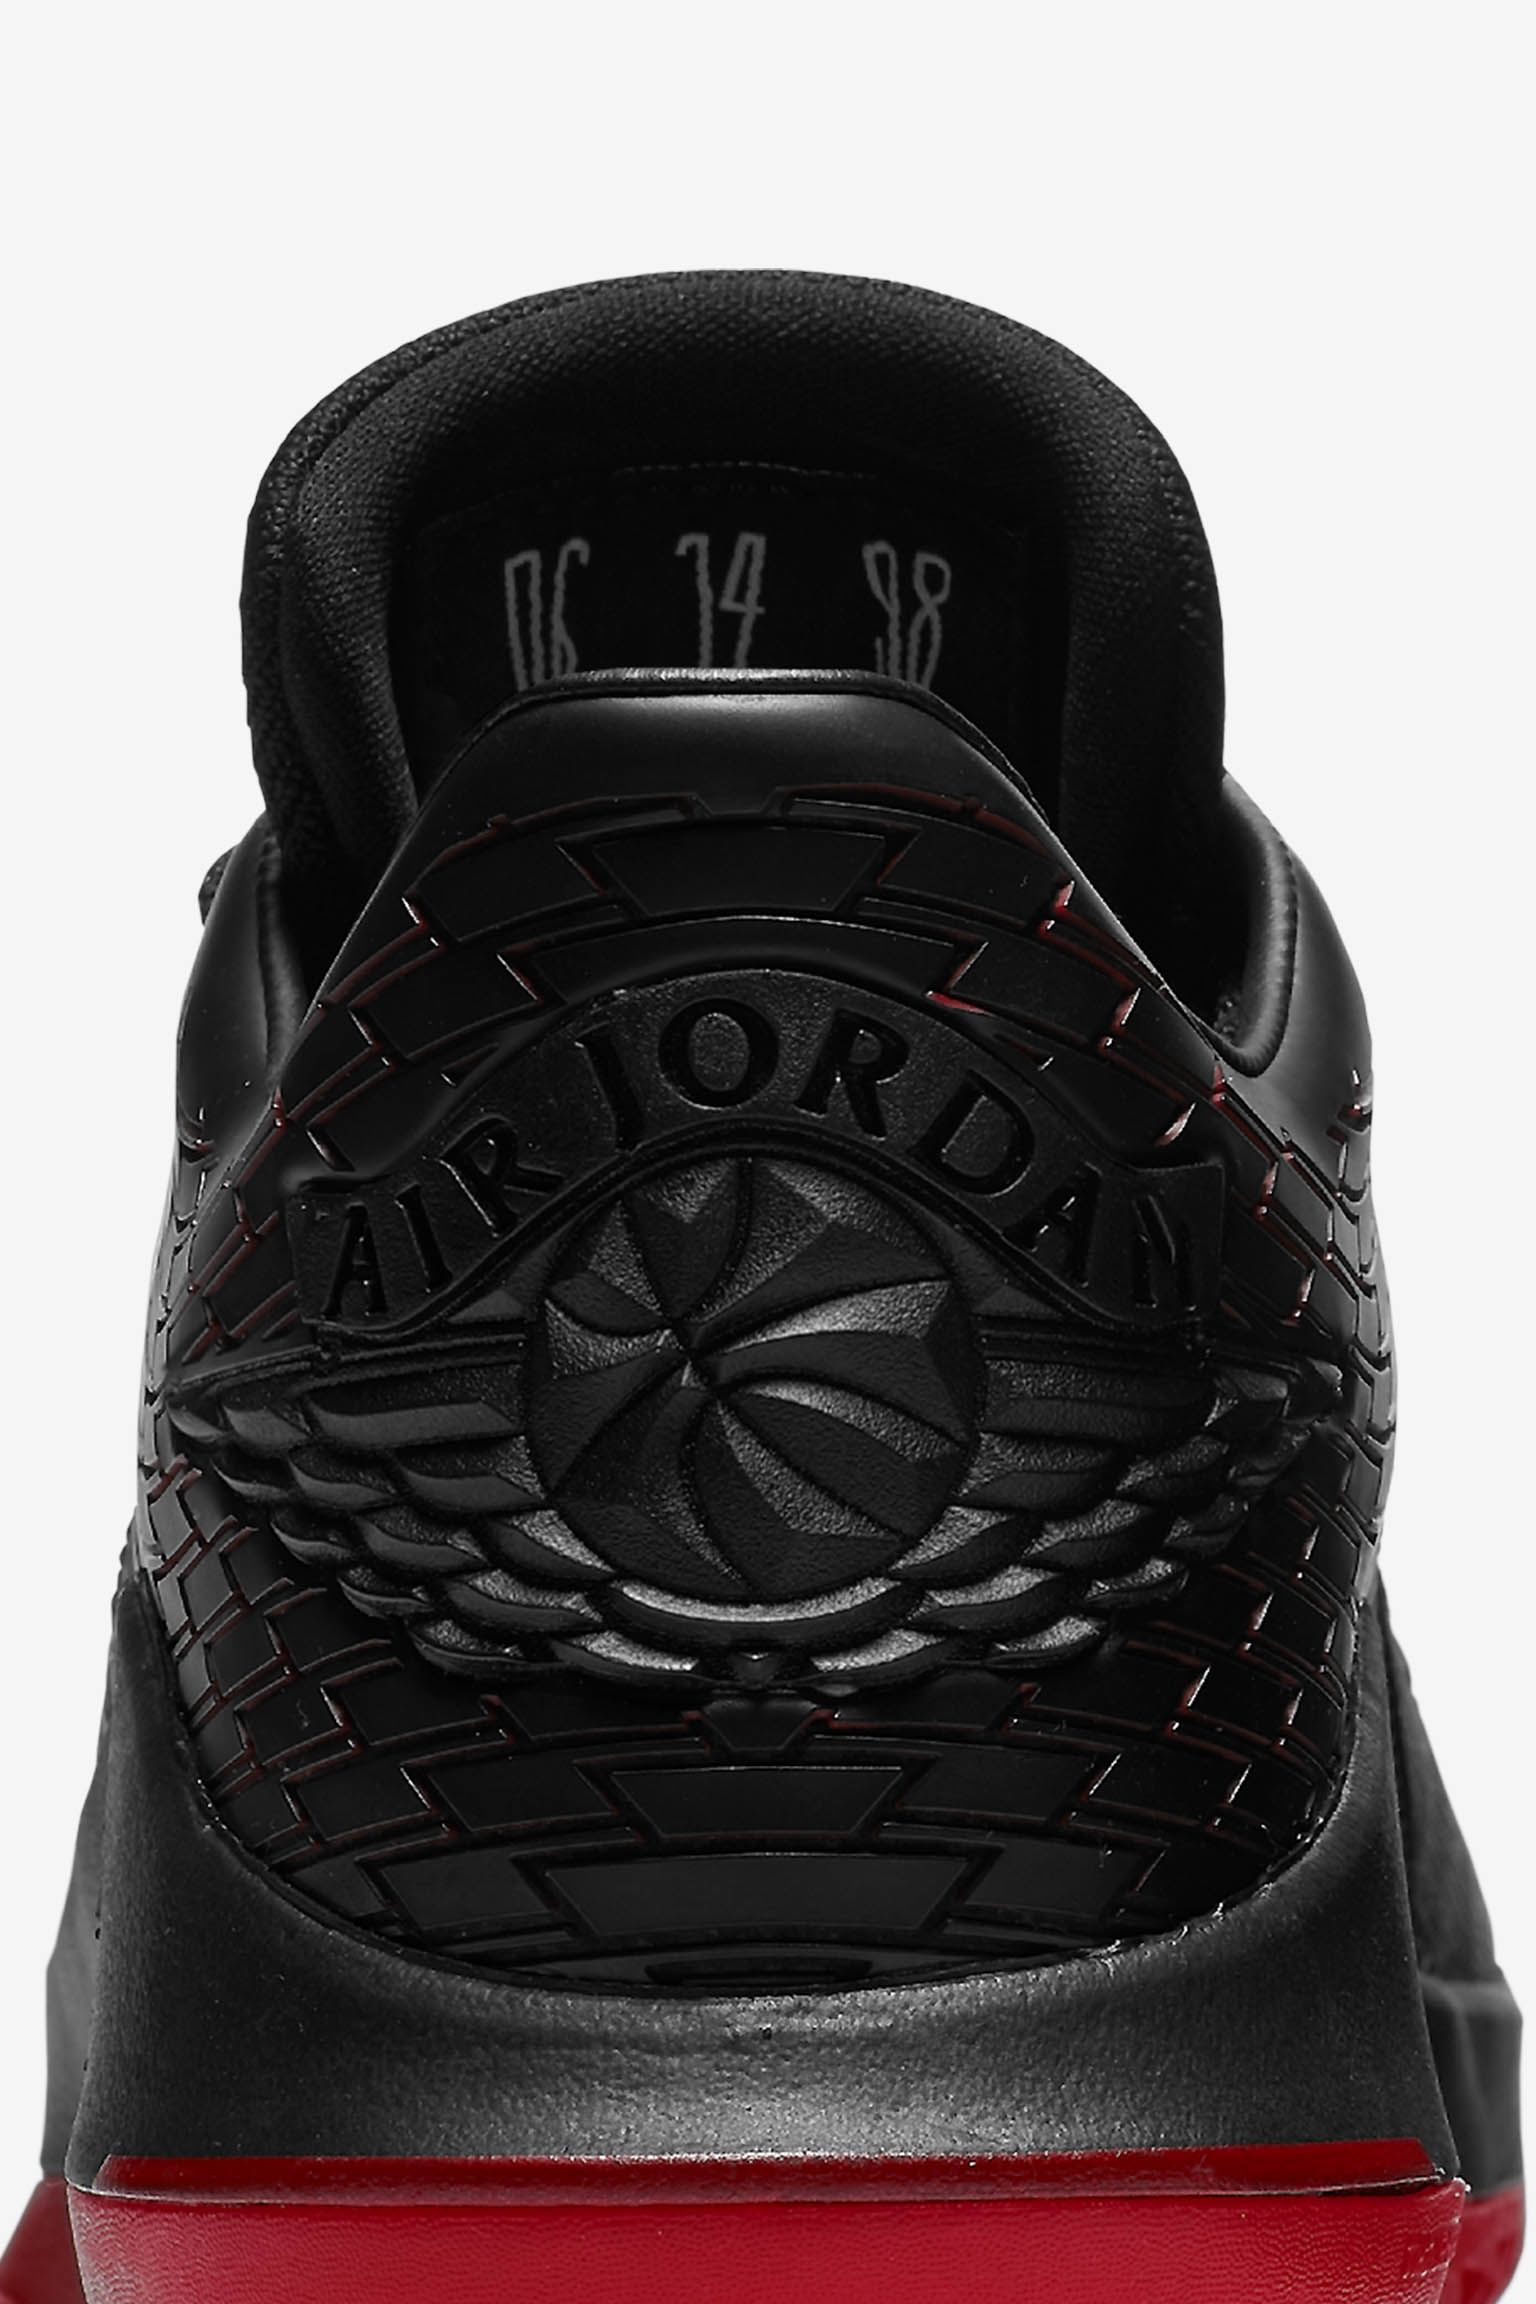 Air Jordan 32 Low 'Last Shot' Release Date. Nike SNKRS